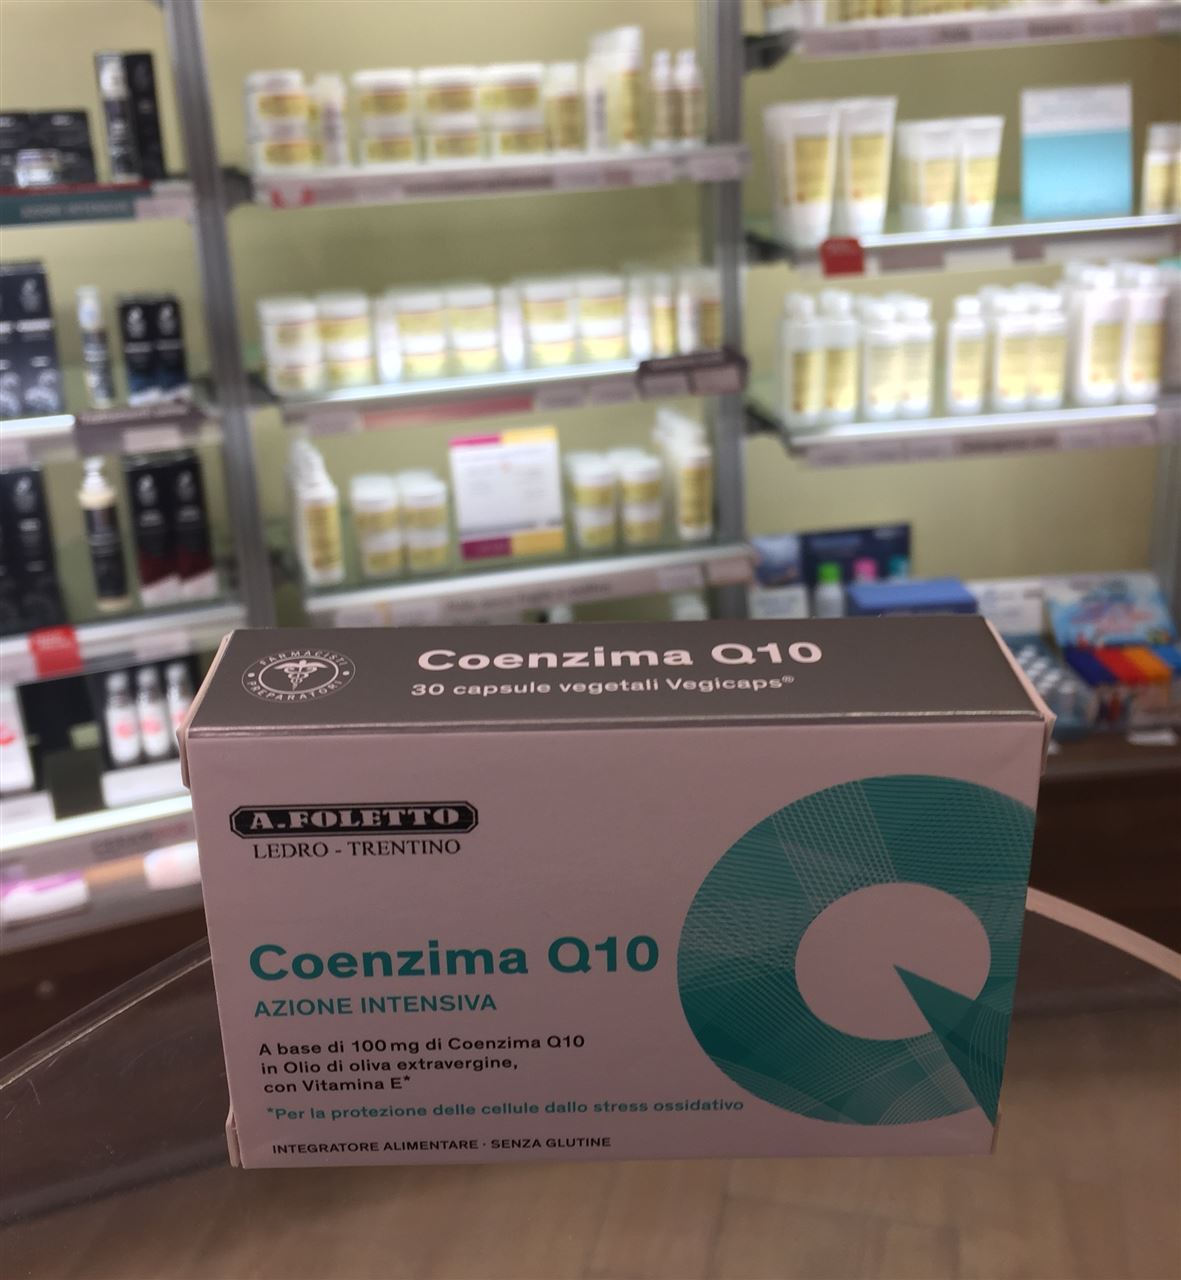 Coenzima Q10 capsule